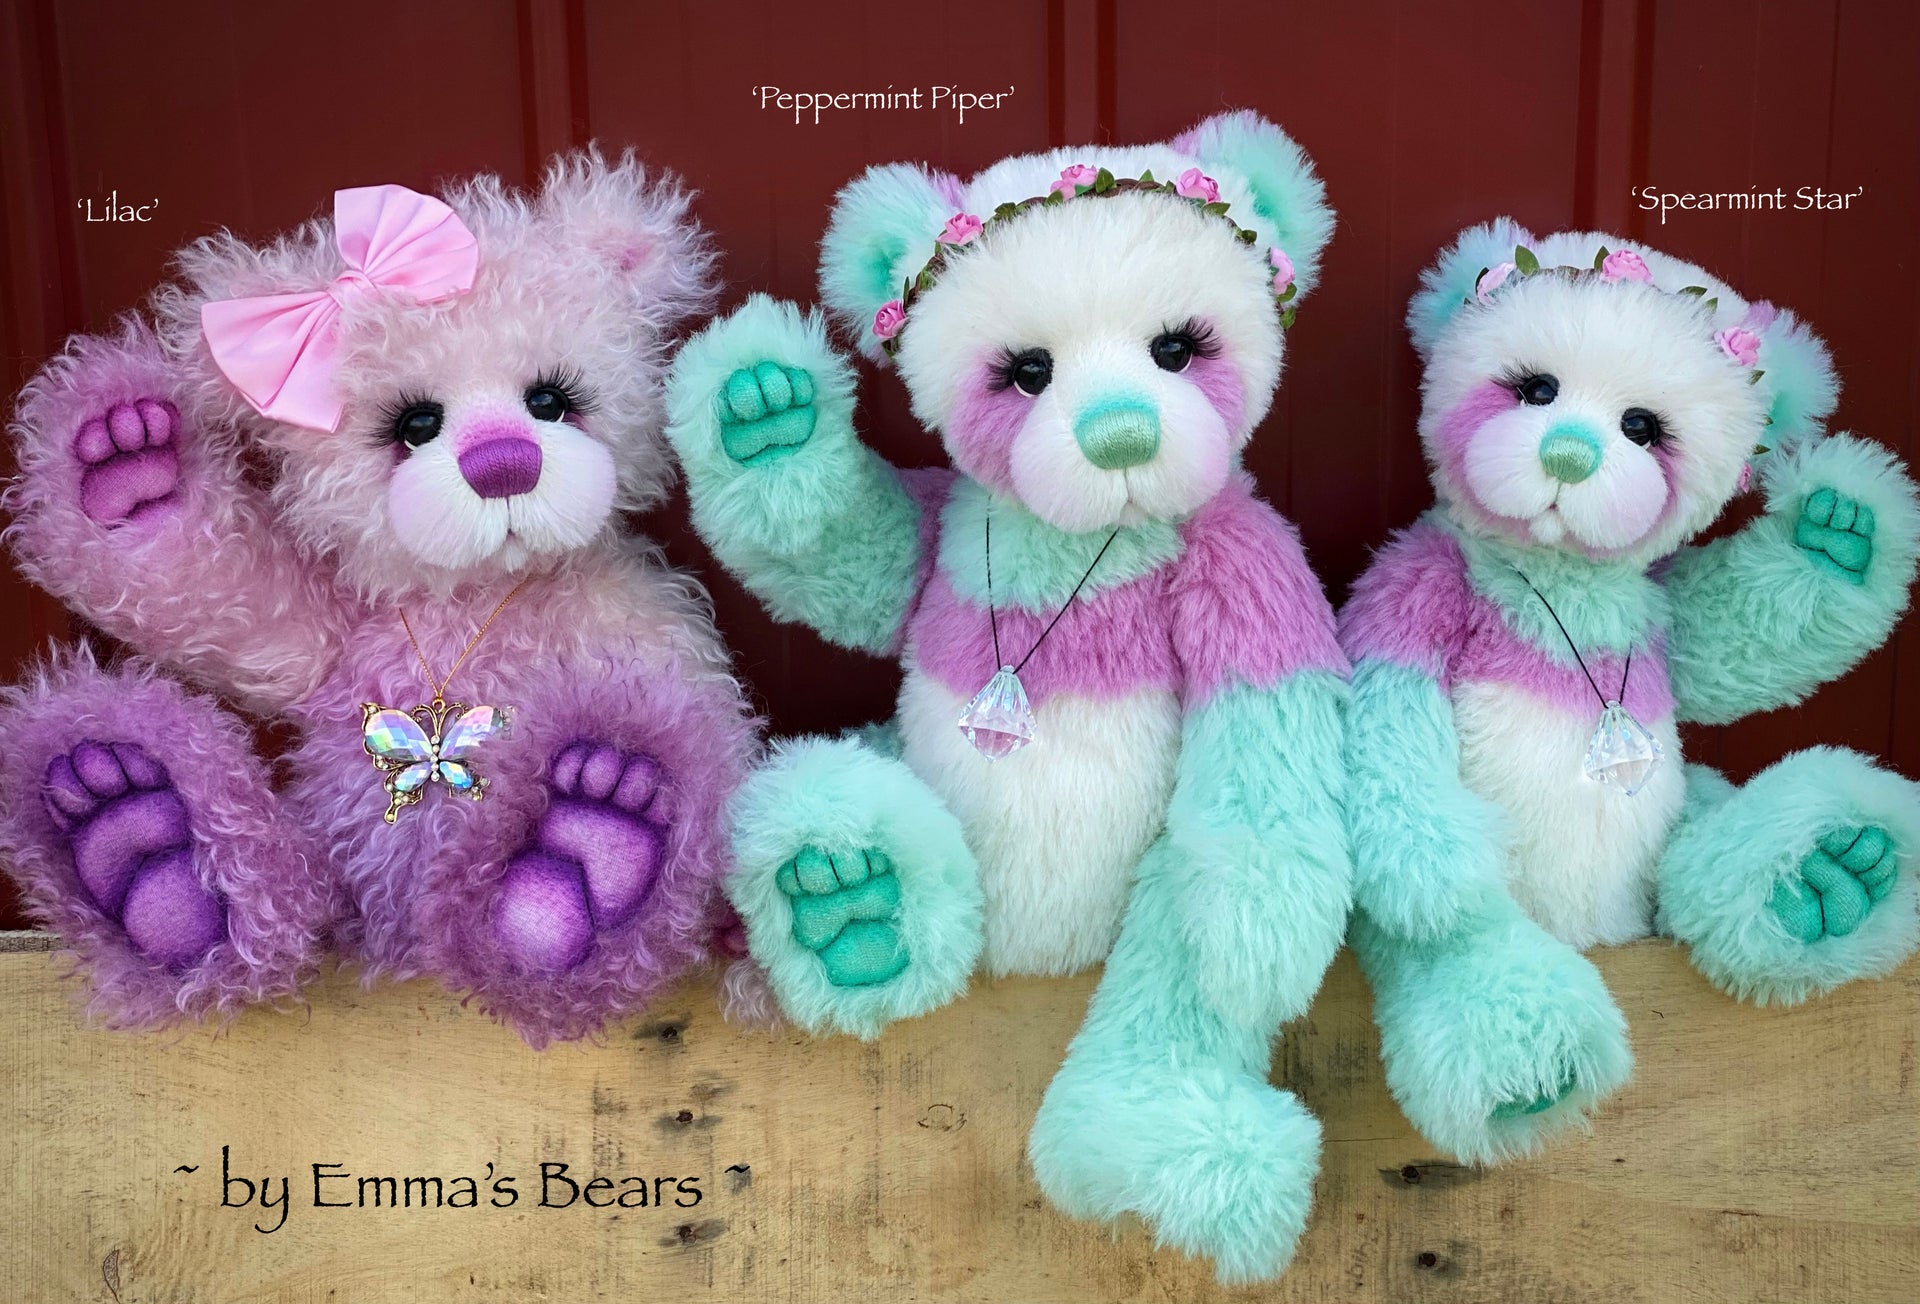 Peppermint Piper - 18" Hand-Dyed Alpaca Artist Bear by Emma's Bears - OOAK